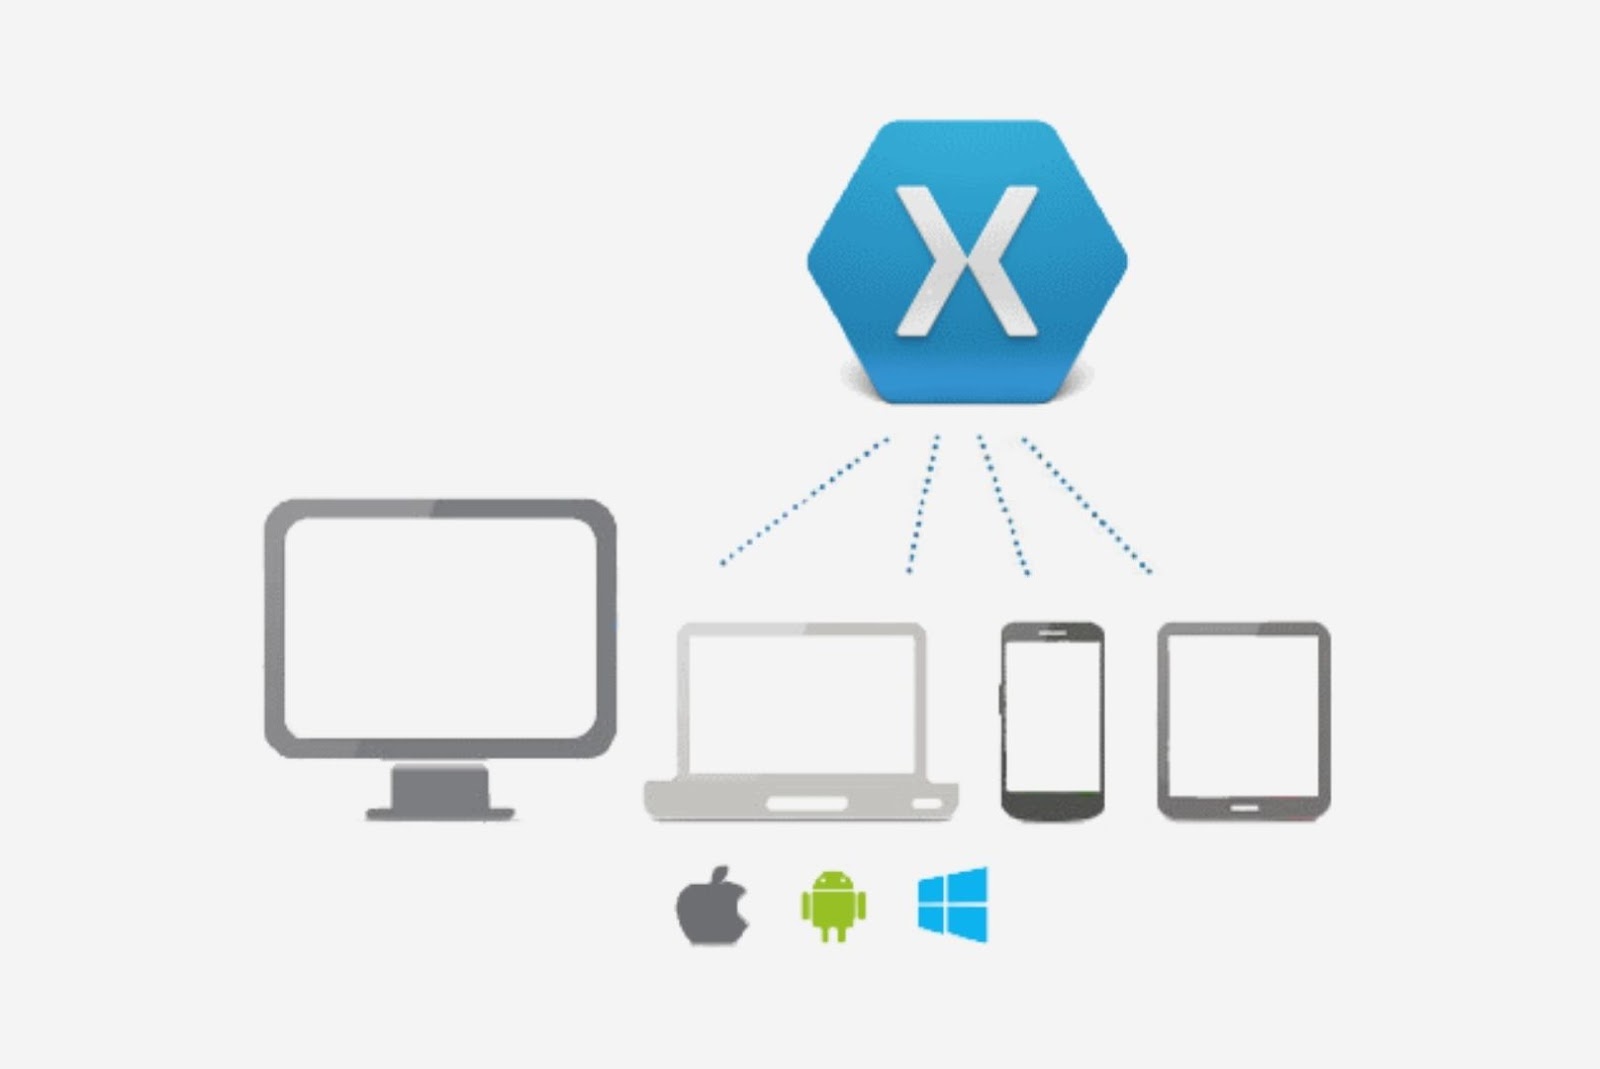 Xamarin cross-platform app development framework